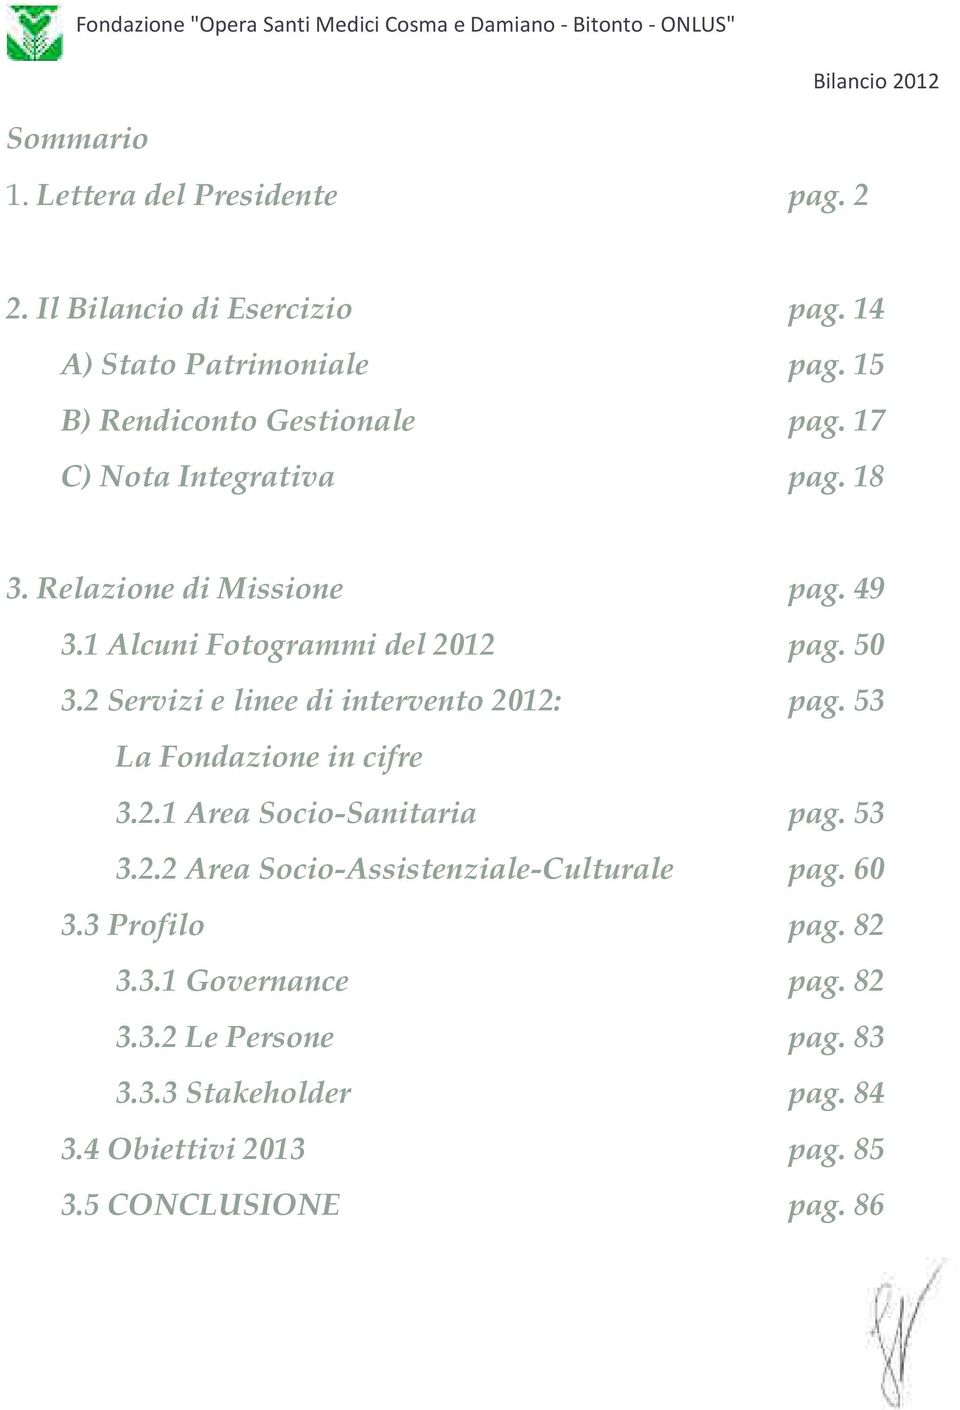 2 Servizi e linee di intervento 2012: pag. 53 La Fondazione in cifre 3.2.1 Area Socio-Sanitaria pag. 53 3.2.2 Area Socio-Assistenziale-Culturale pag.